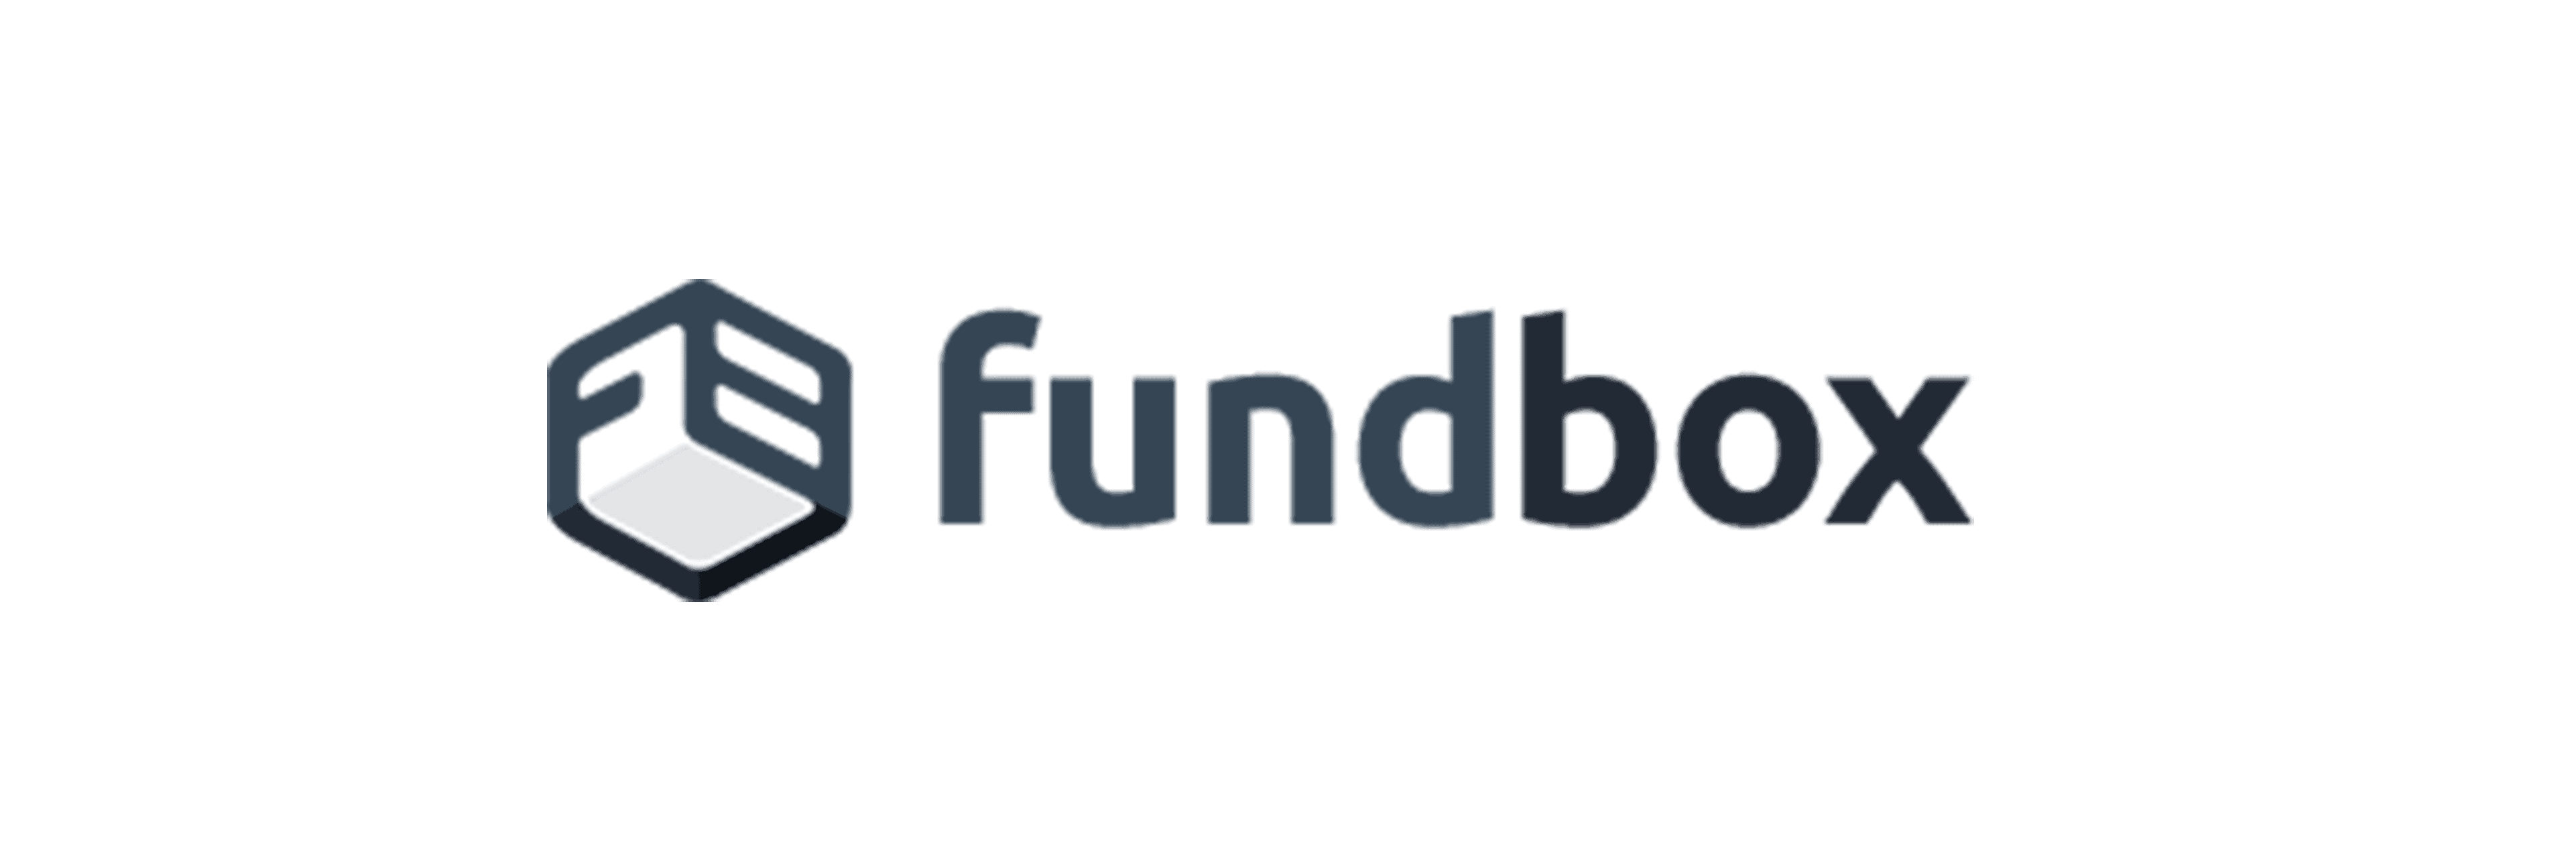 Fundbox logo V1 - Instalment Plans